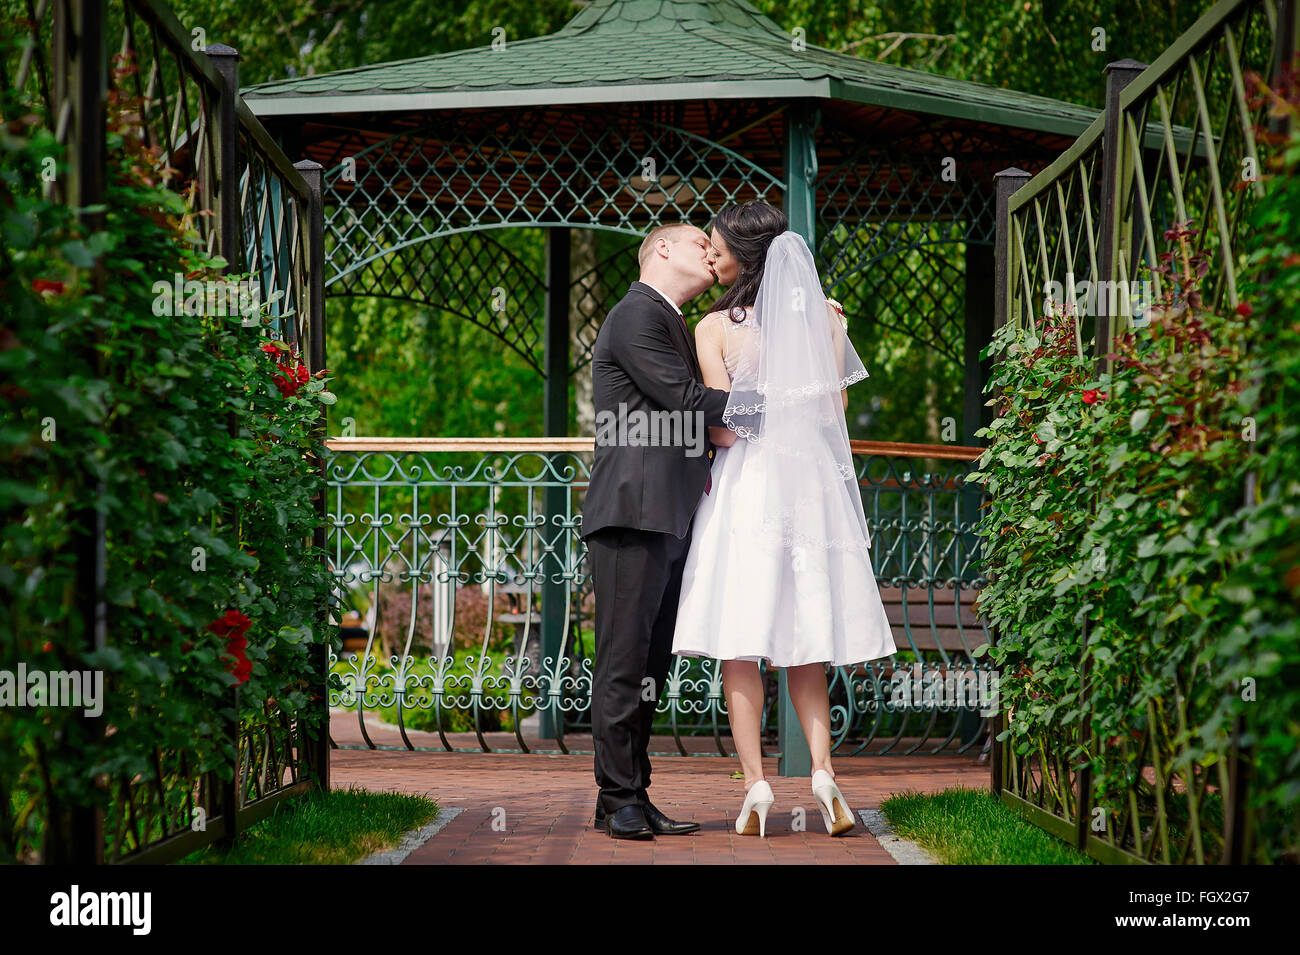 Bride and Groom kissing près de la gloriette dans le parc Banque D'Images